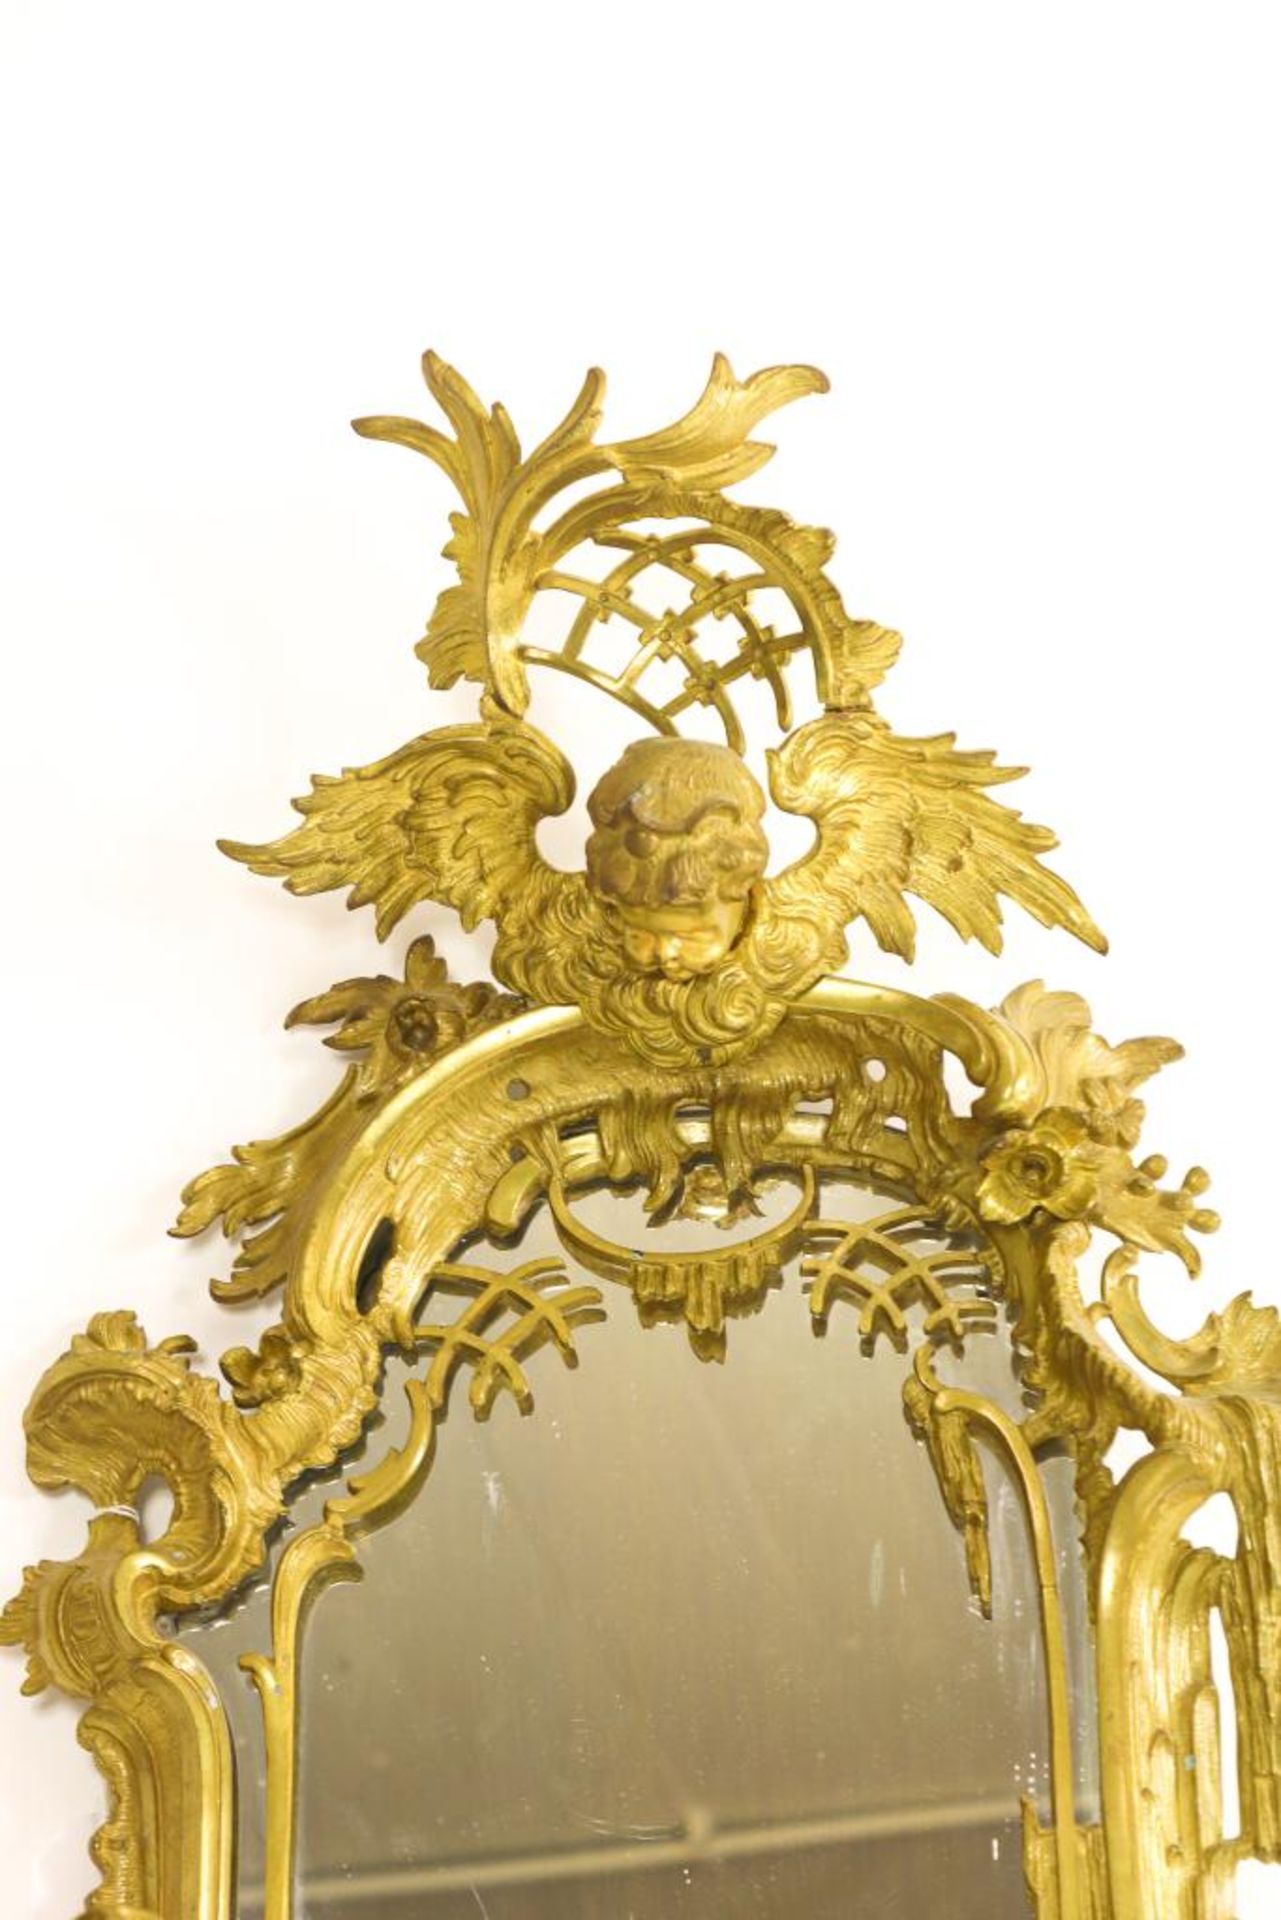 Bronzen Louis XV-stijl spiegel - Bild 3 aus 5